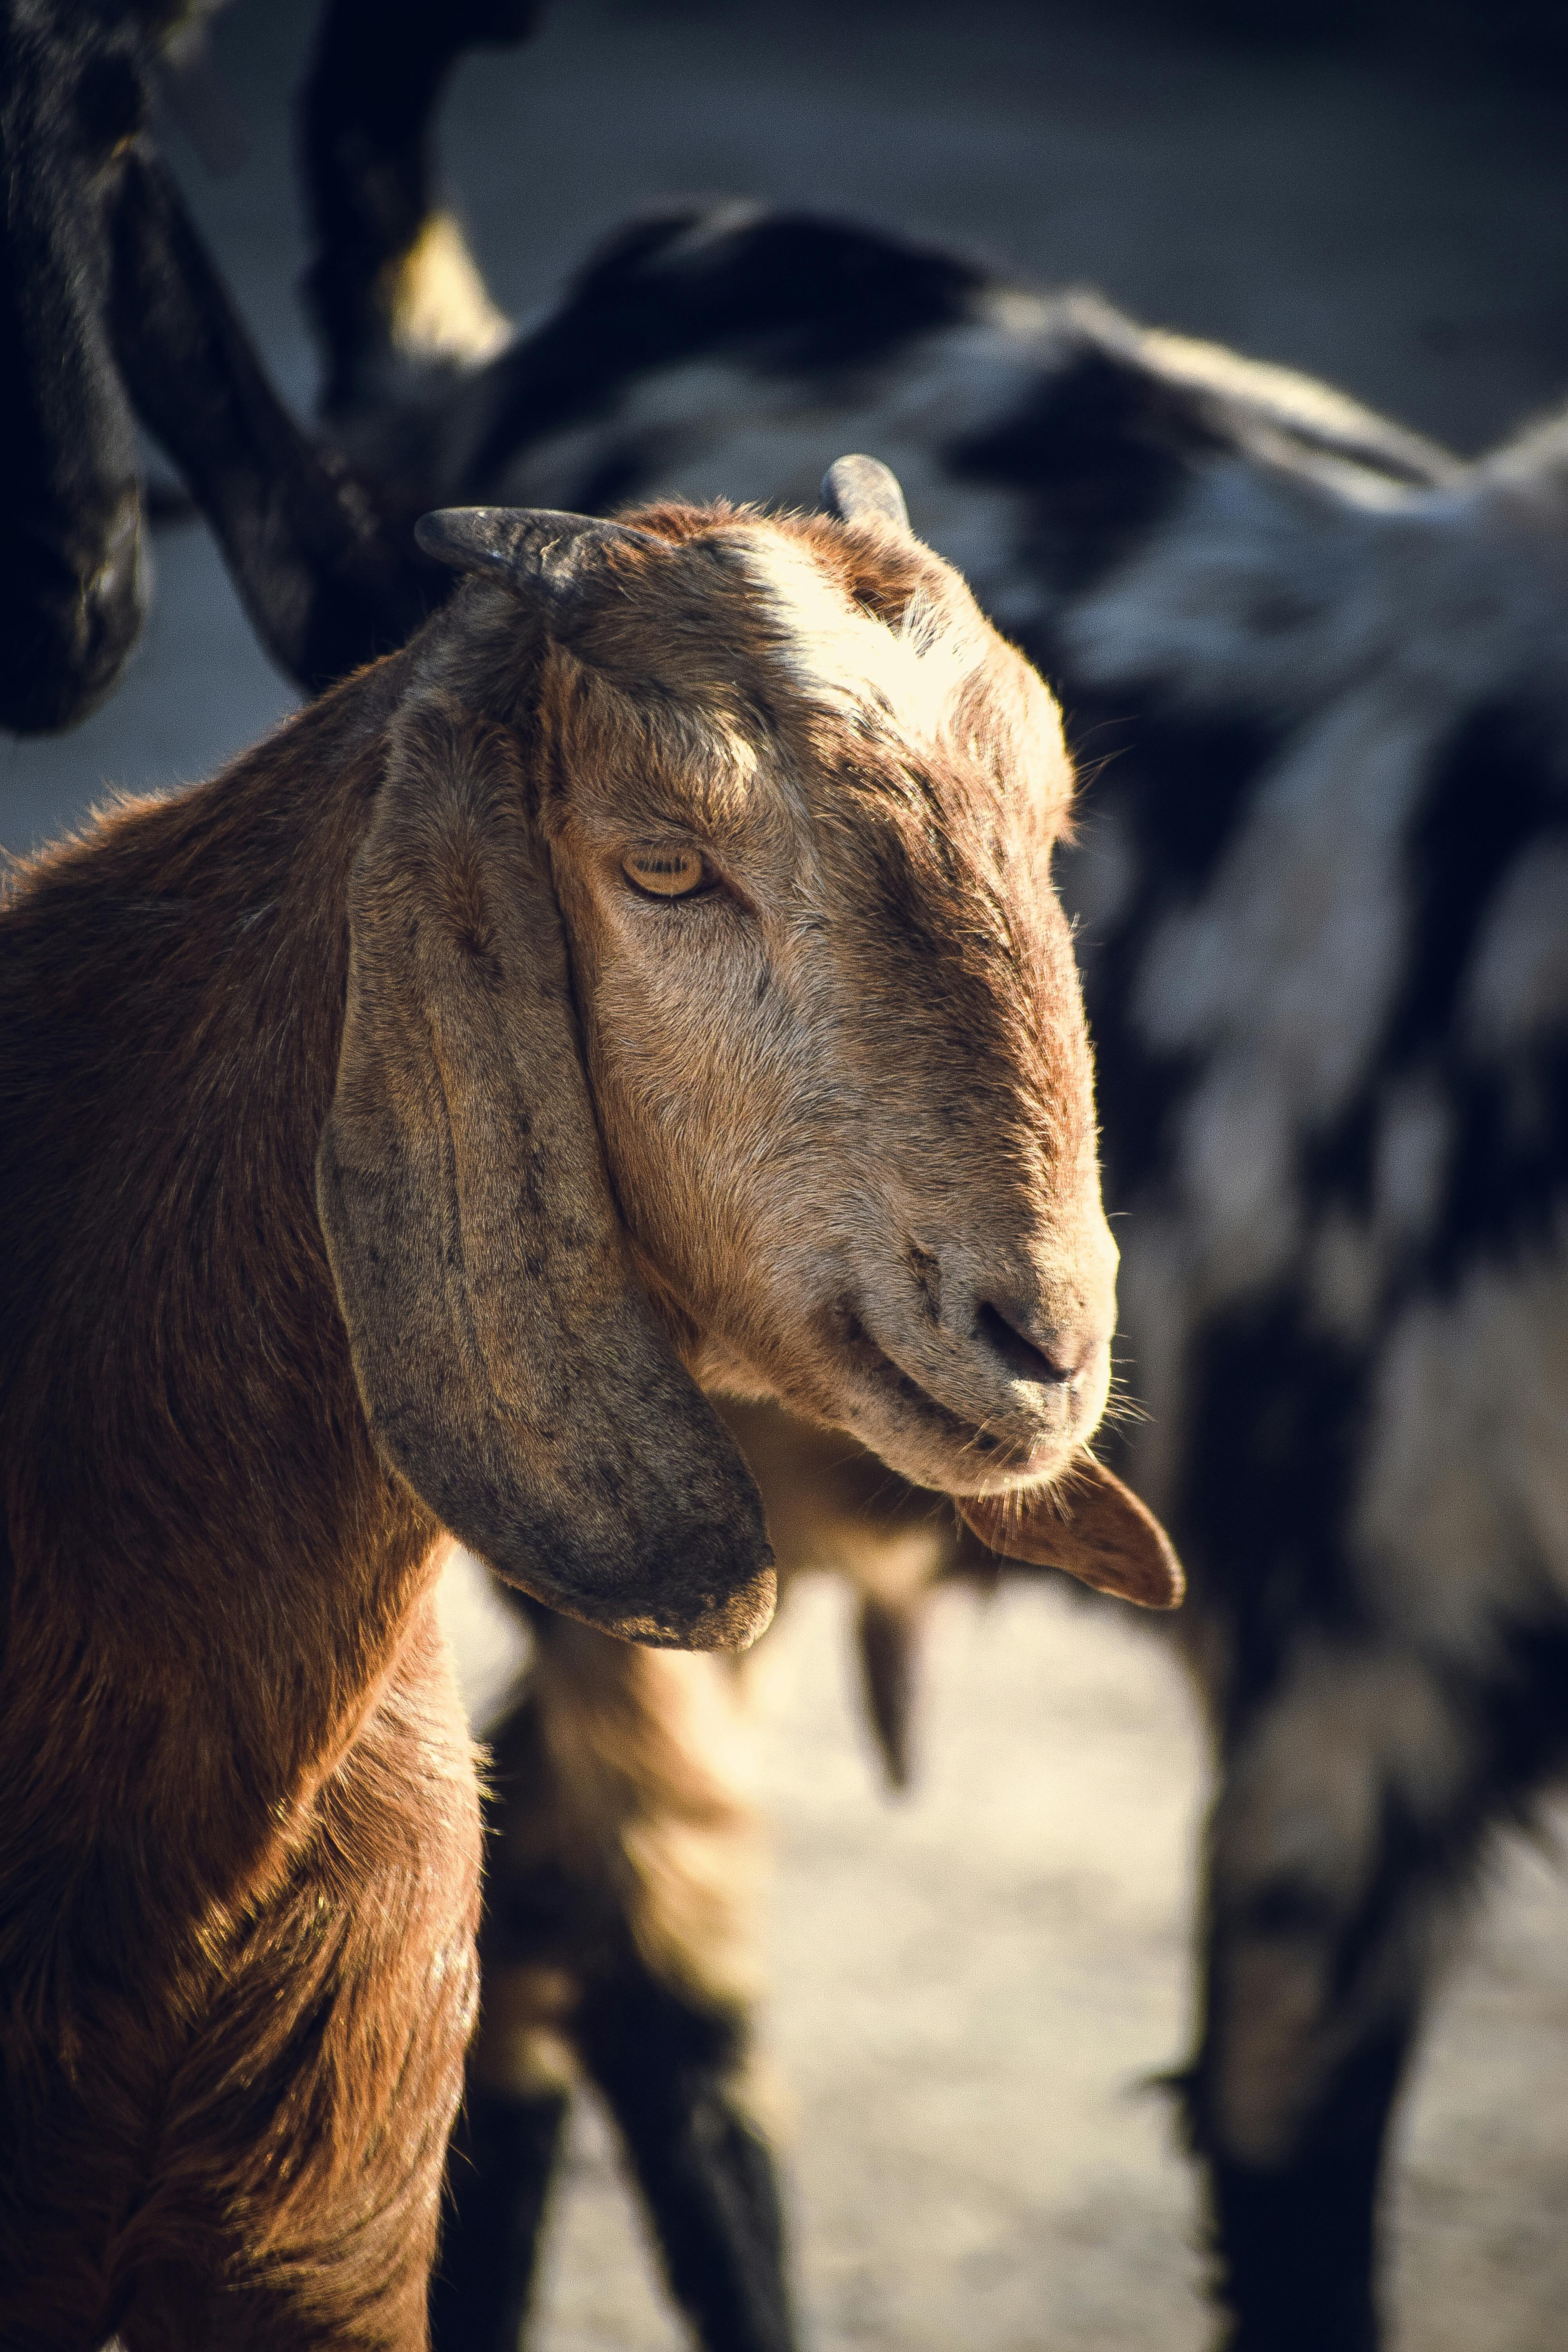 White Goat Beside Fence · Free Stock Photo